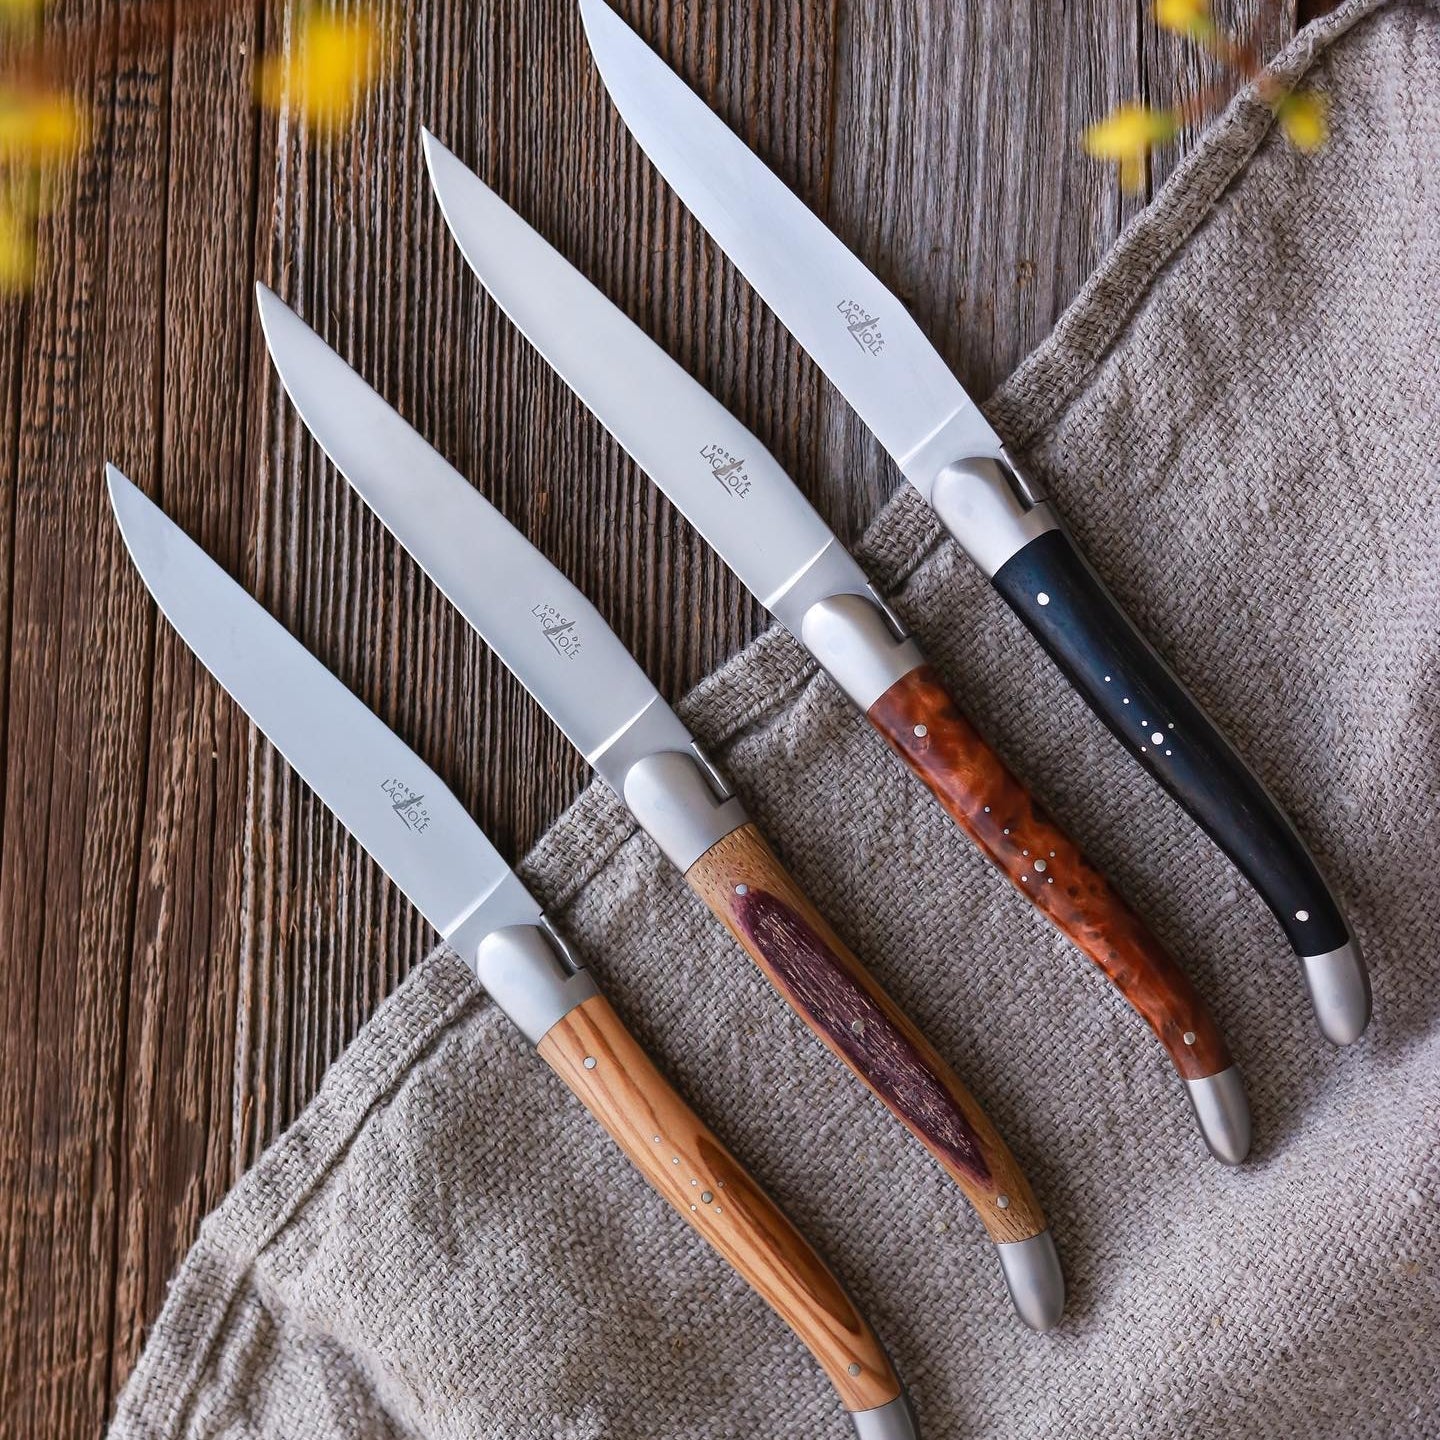 6 piece knife set